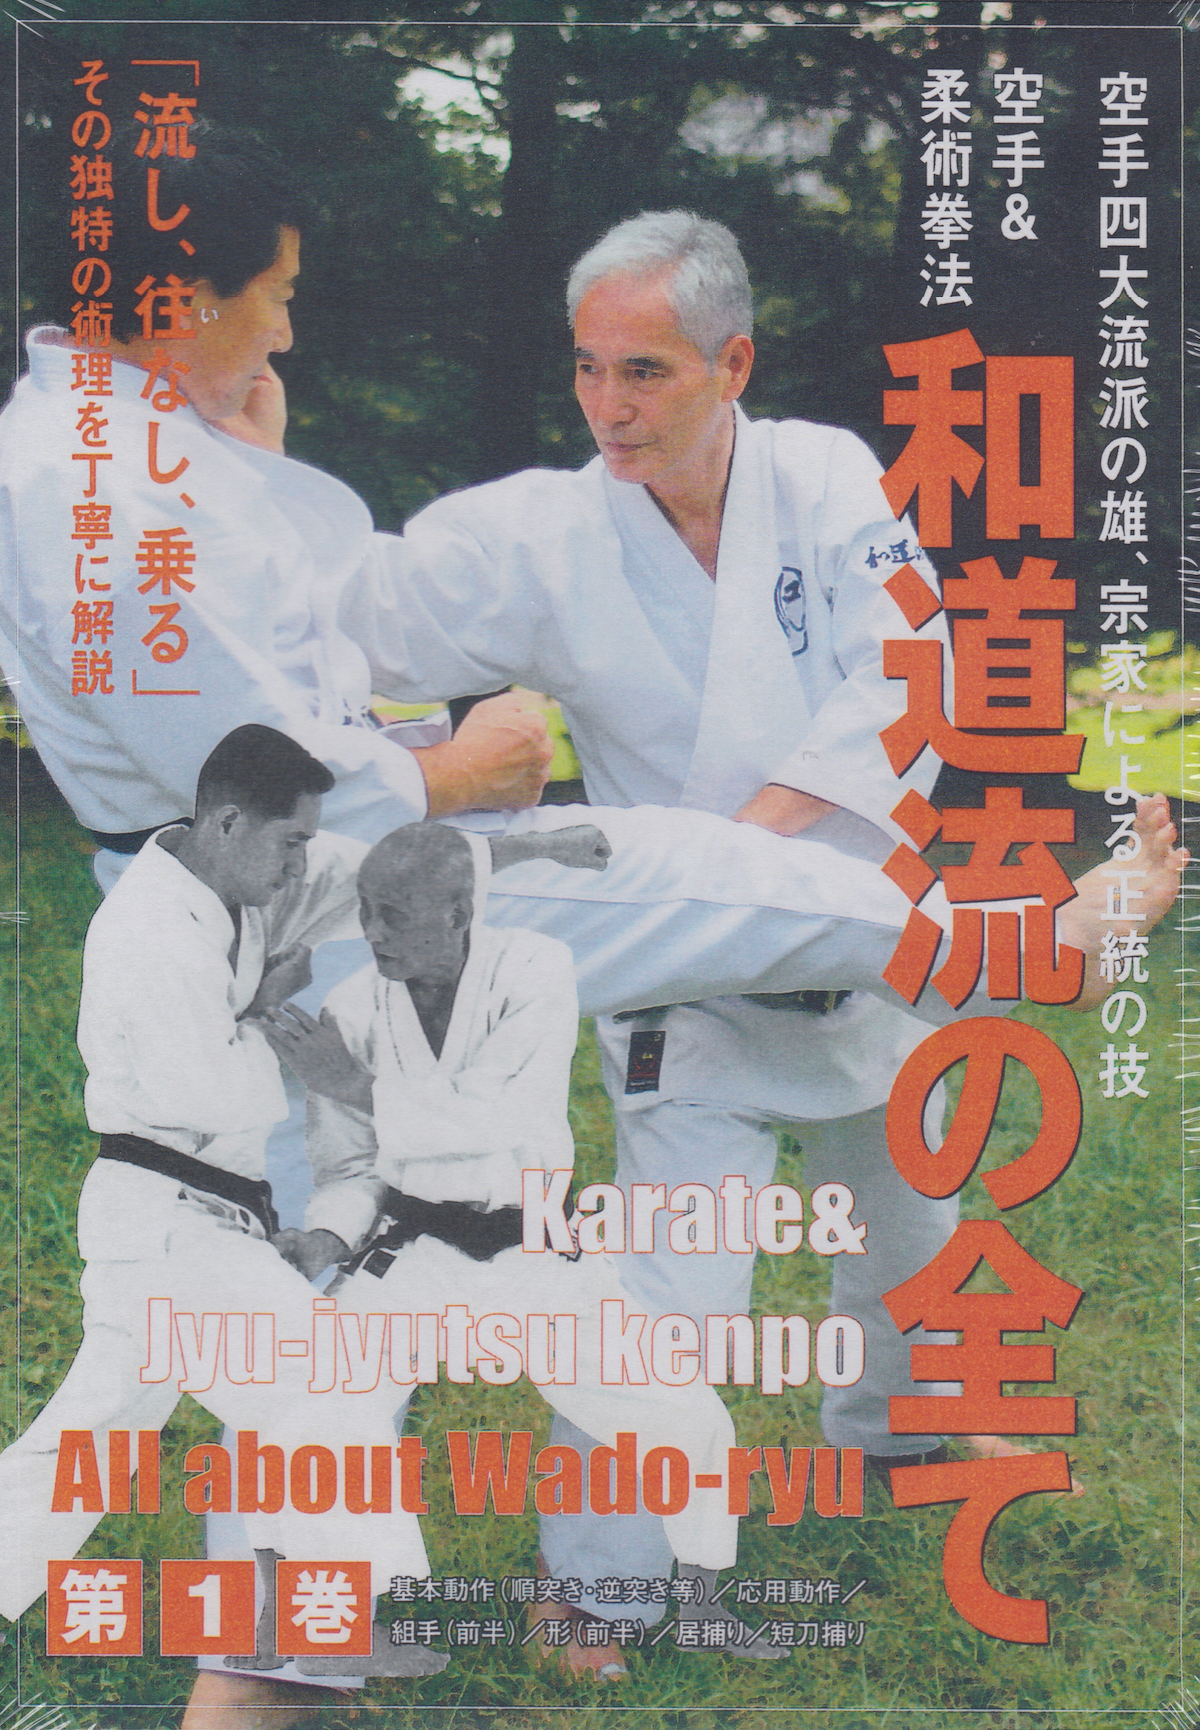 All Wado Ryu DVD 1: Karate & Jujutsu Kenpo by Jiro Otsuka